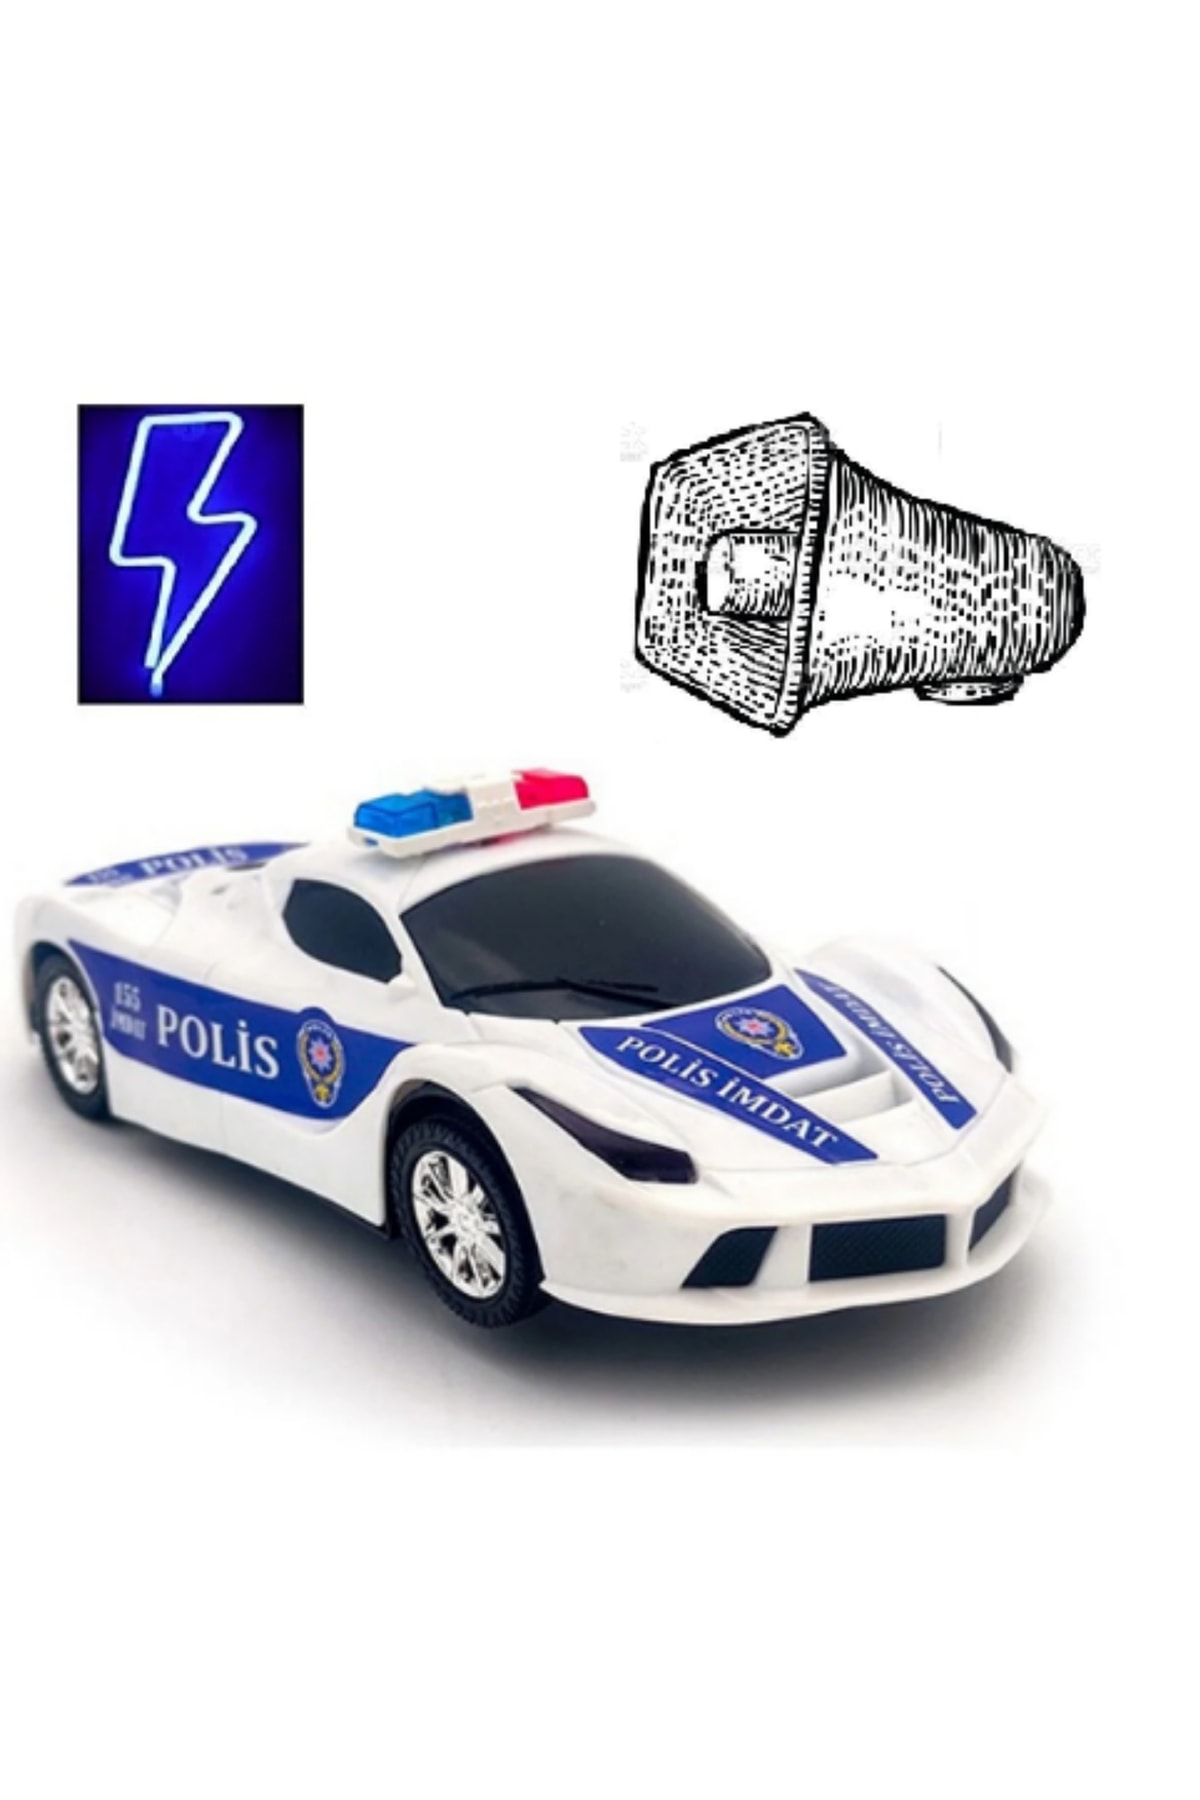 LRS STORE Oyuncak Polis Arabası Ferrari Işıklı Ve Türkçe Anonslu Sirenli Hediye Oyuncak